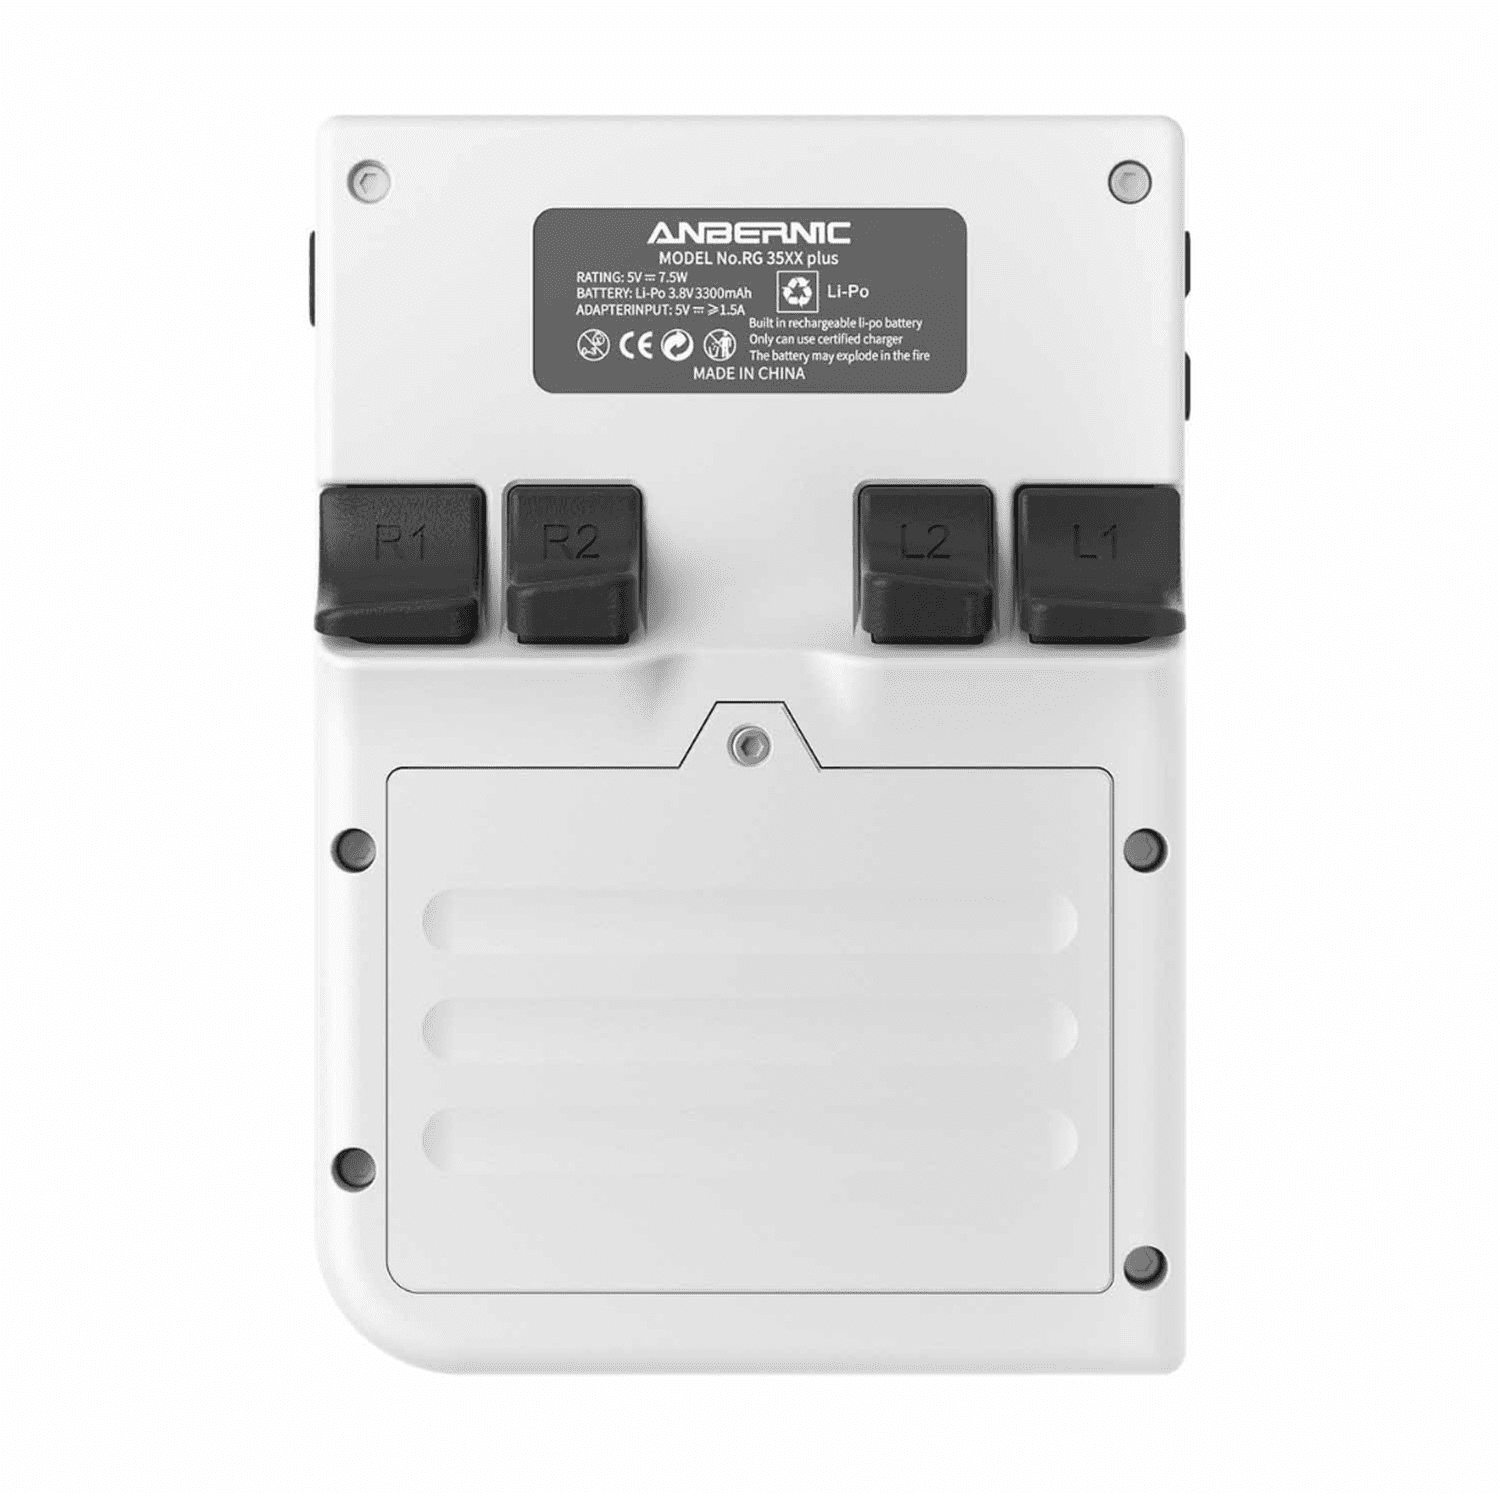 Console émulateur portable RG35XX Plus Anbernic